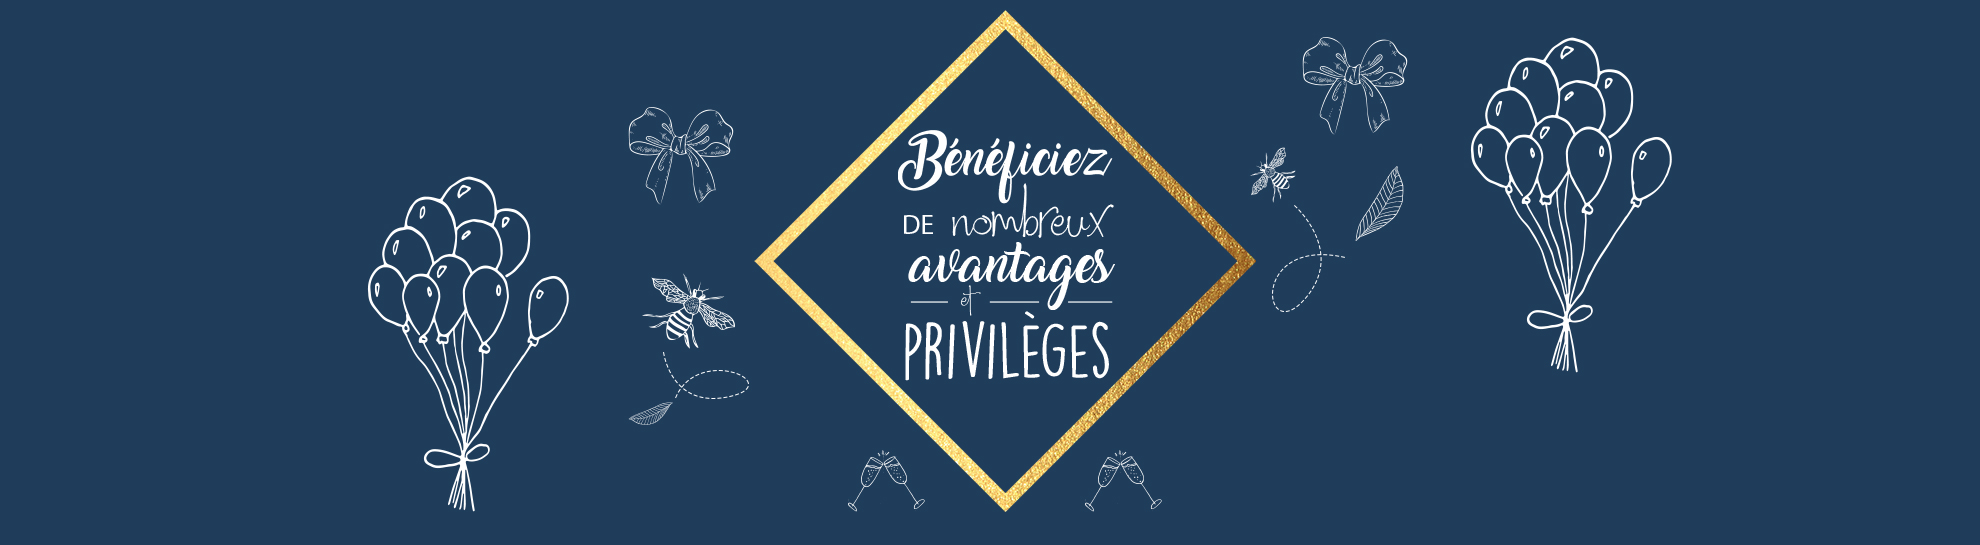 Vos avantages et privilèges